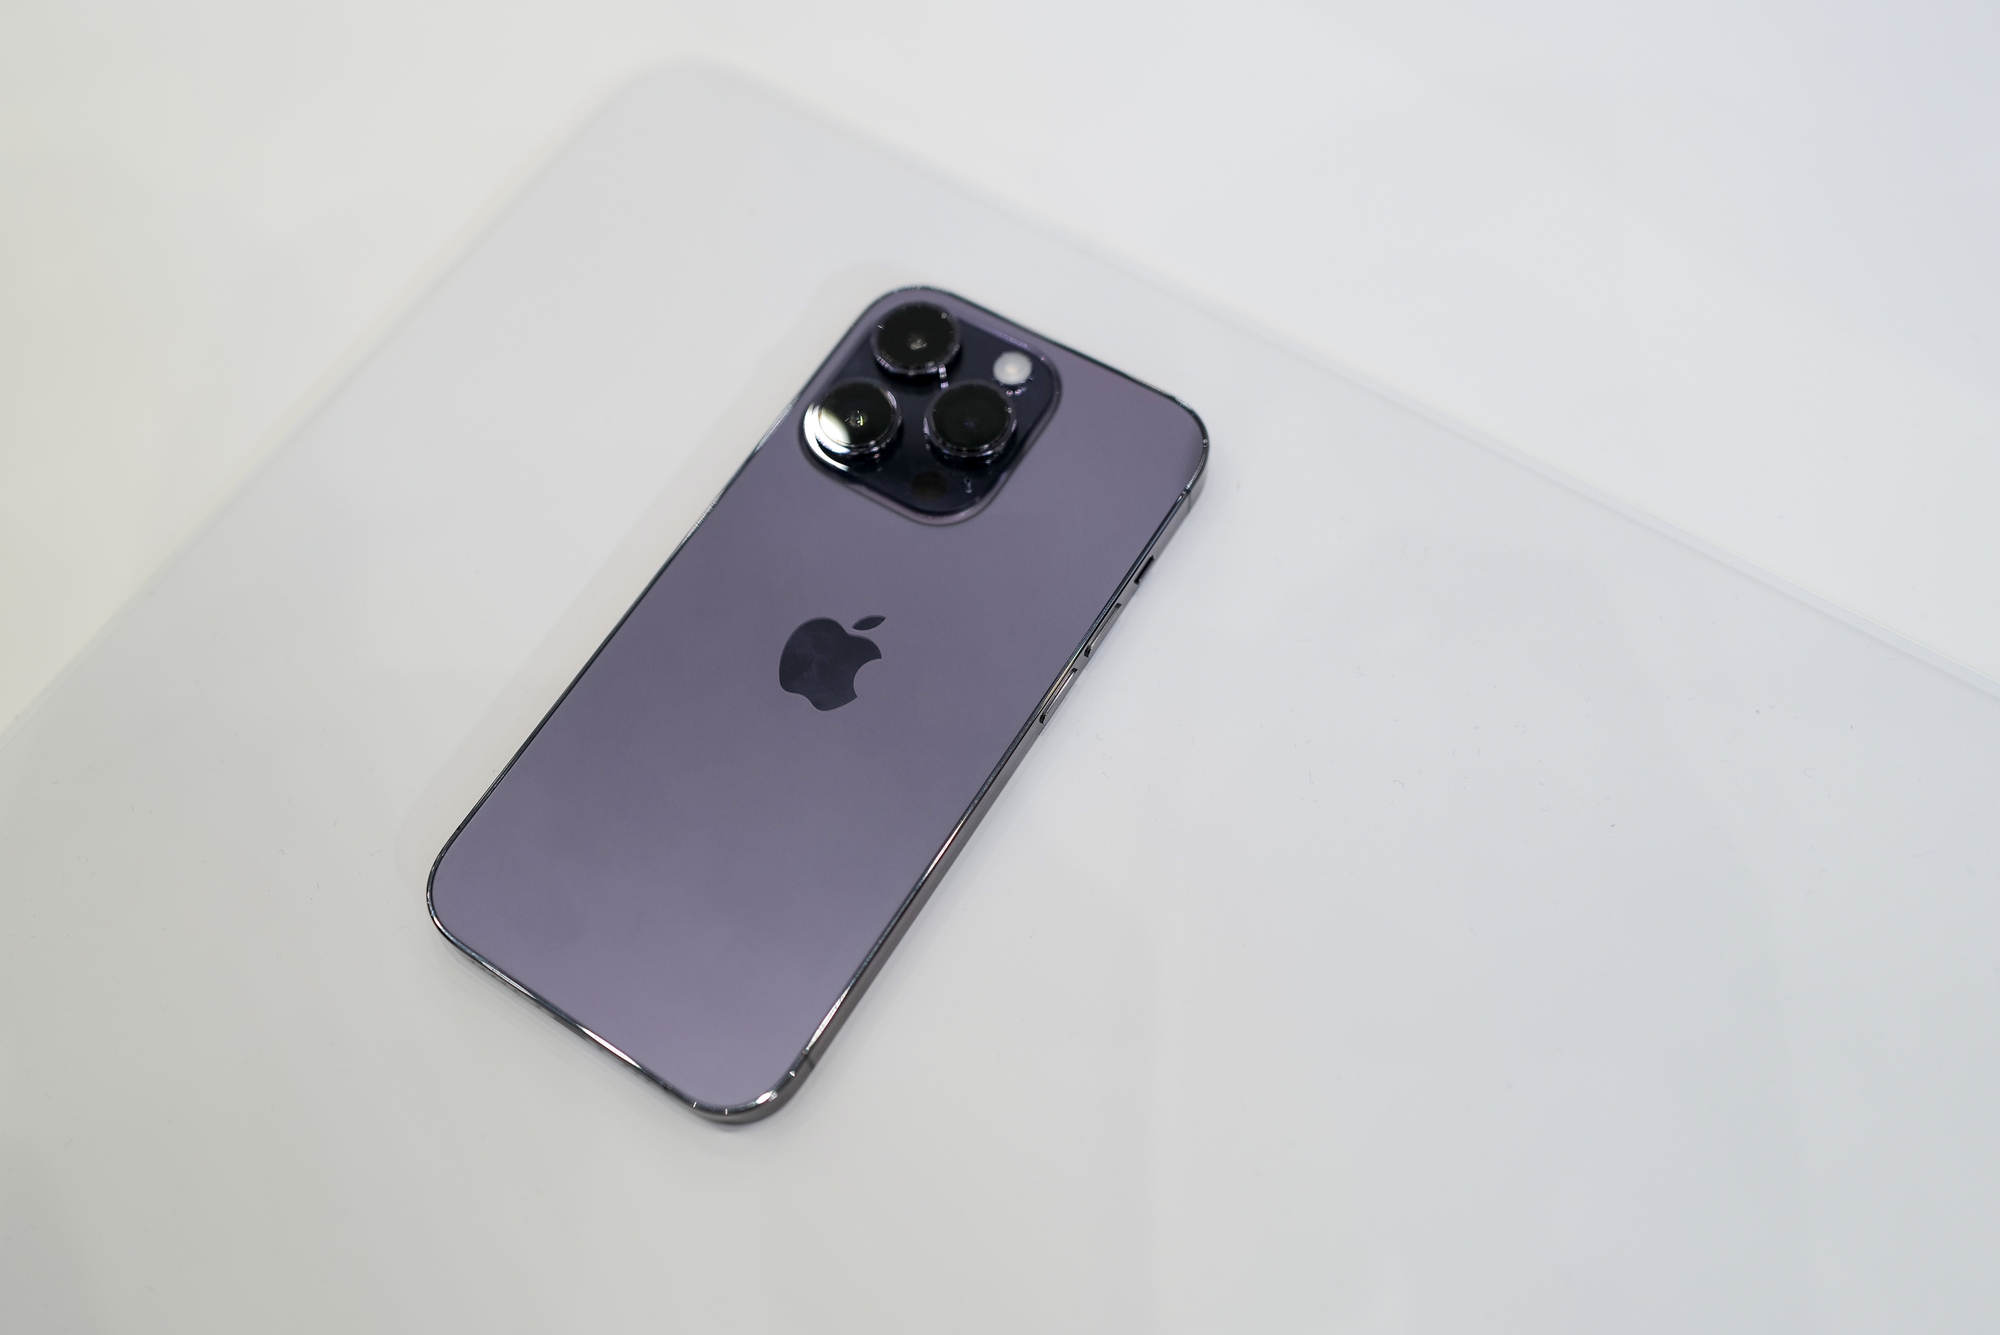 Chào mừng bạn đến với thế giới iPhone 14 Pro màu tím sang trọng và đẳng cấp! Hình ảnh đẹp như tranh vẽ của chiếc iPhone này sẽ khiến bạn trầm trồ ngất ngây. Cùng xem qua để khám phá những tính năng và trải nghiệm tuyệt vời của chiếc điện thoại này.